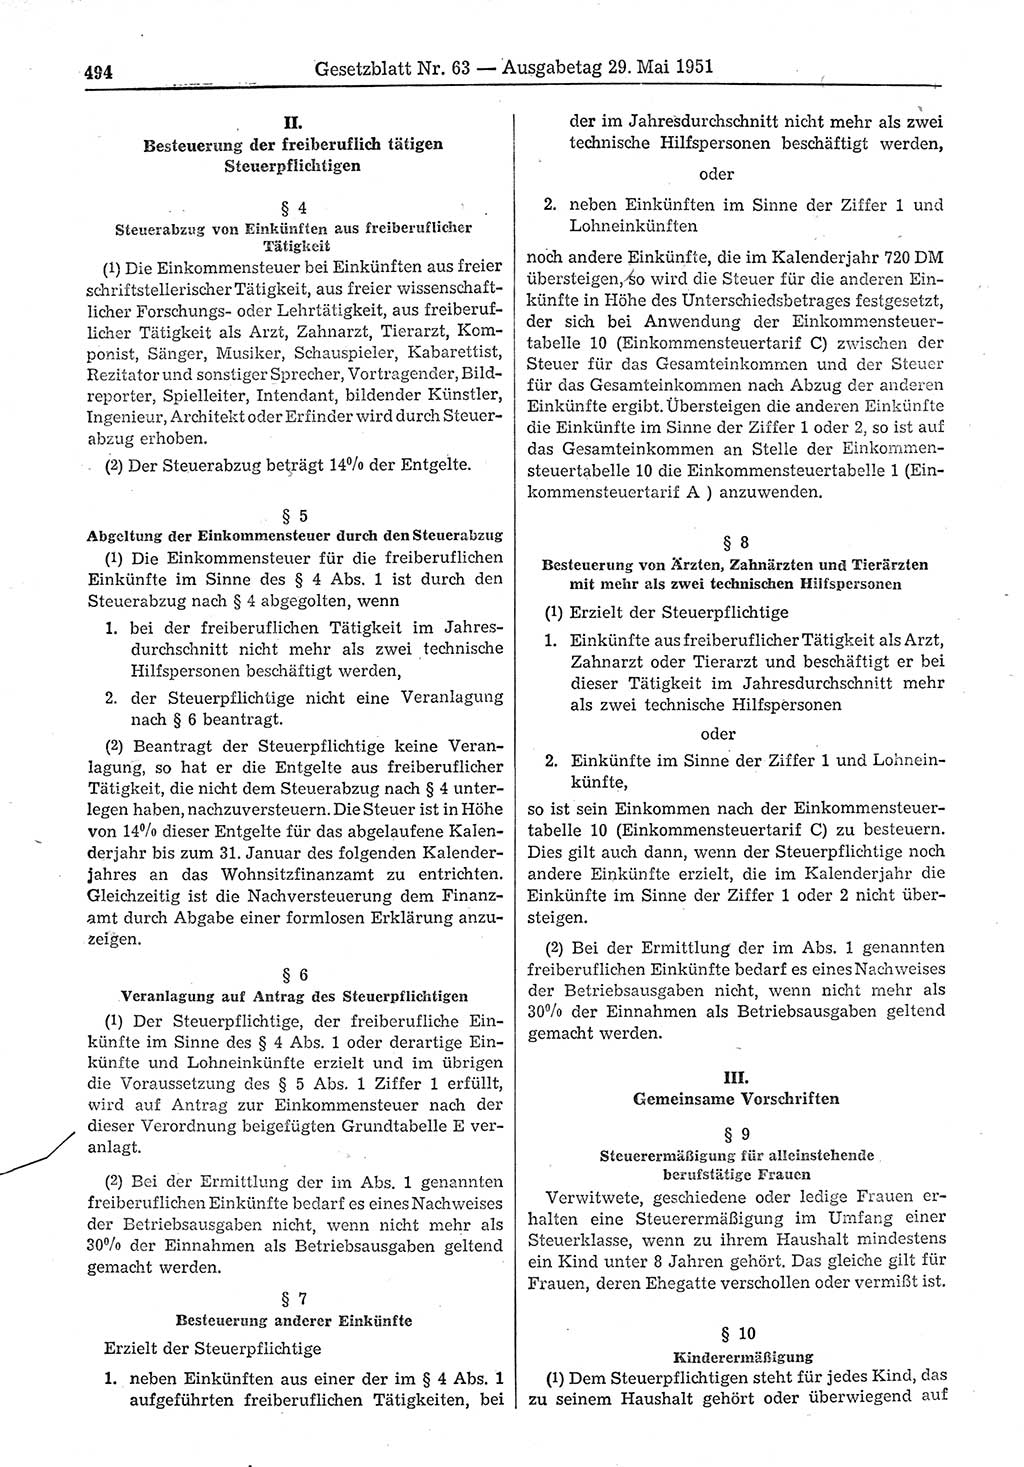 Gesetzblatt (GBl.) der Deutschen Demokratischen Republik (DDR) 1951, Seite 494 (GBl. DDR 1951, S. 494)